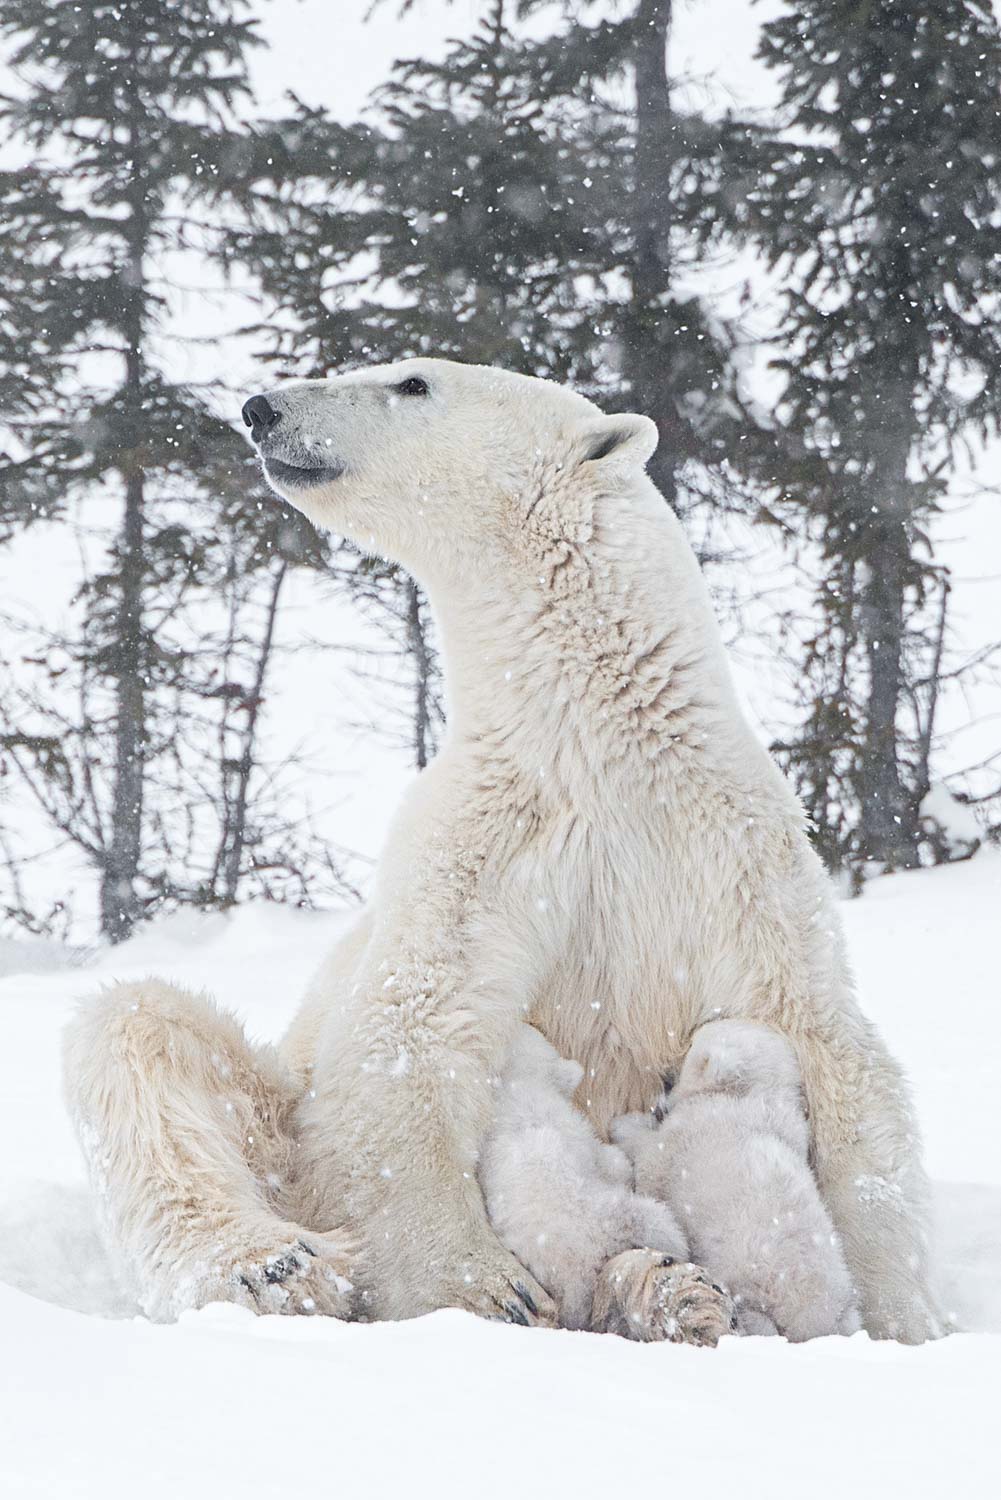 Obwohl die Bärenmutter nun seit vielen Monaten nichts mehr gefressen hat, benötigen die Jungen regelmäßig ihre fettreiche Milch.